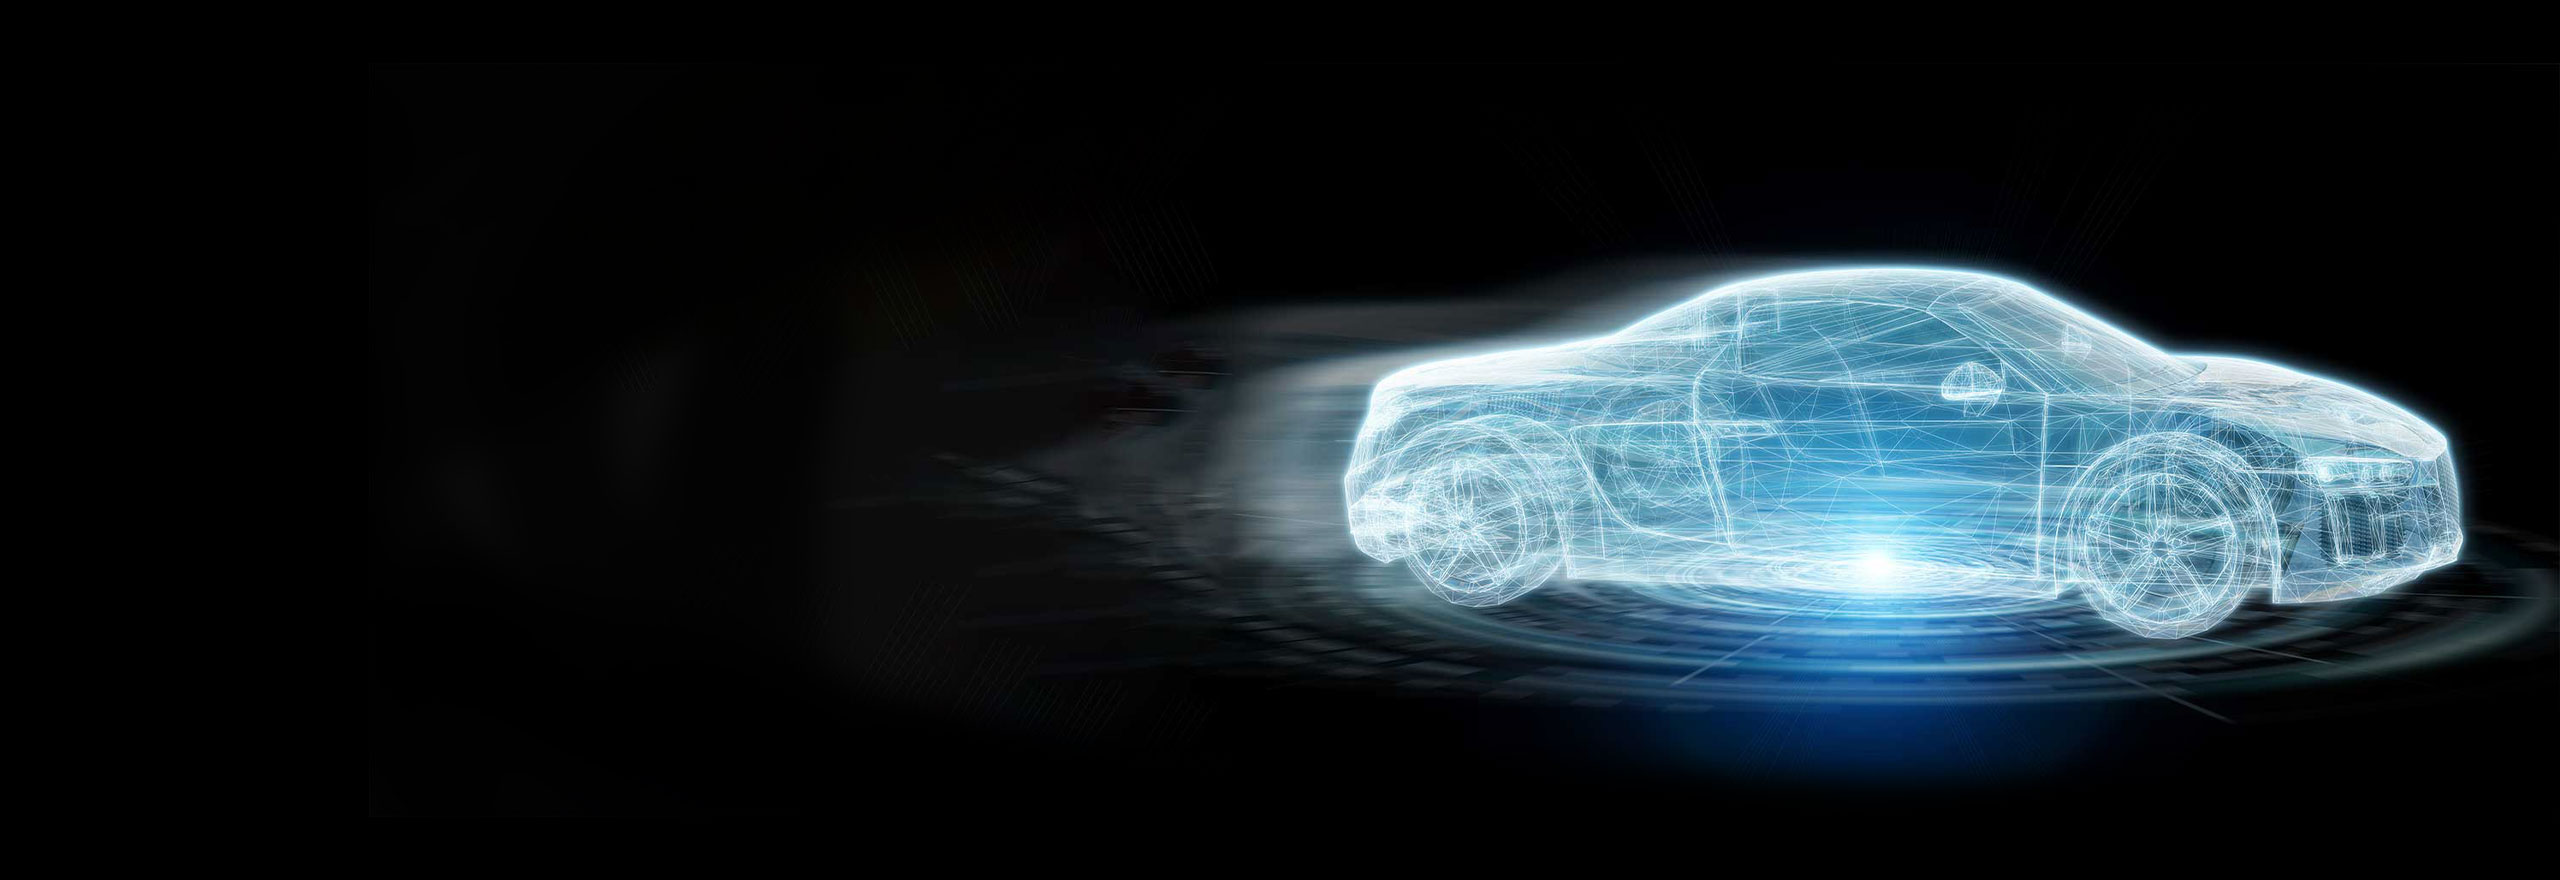 Imagen conceptual de un vehículo eléctrico